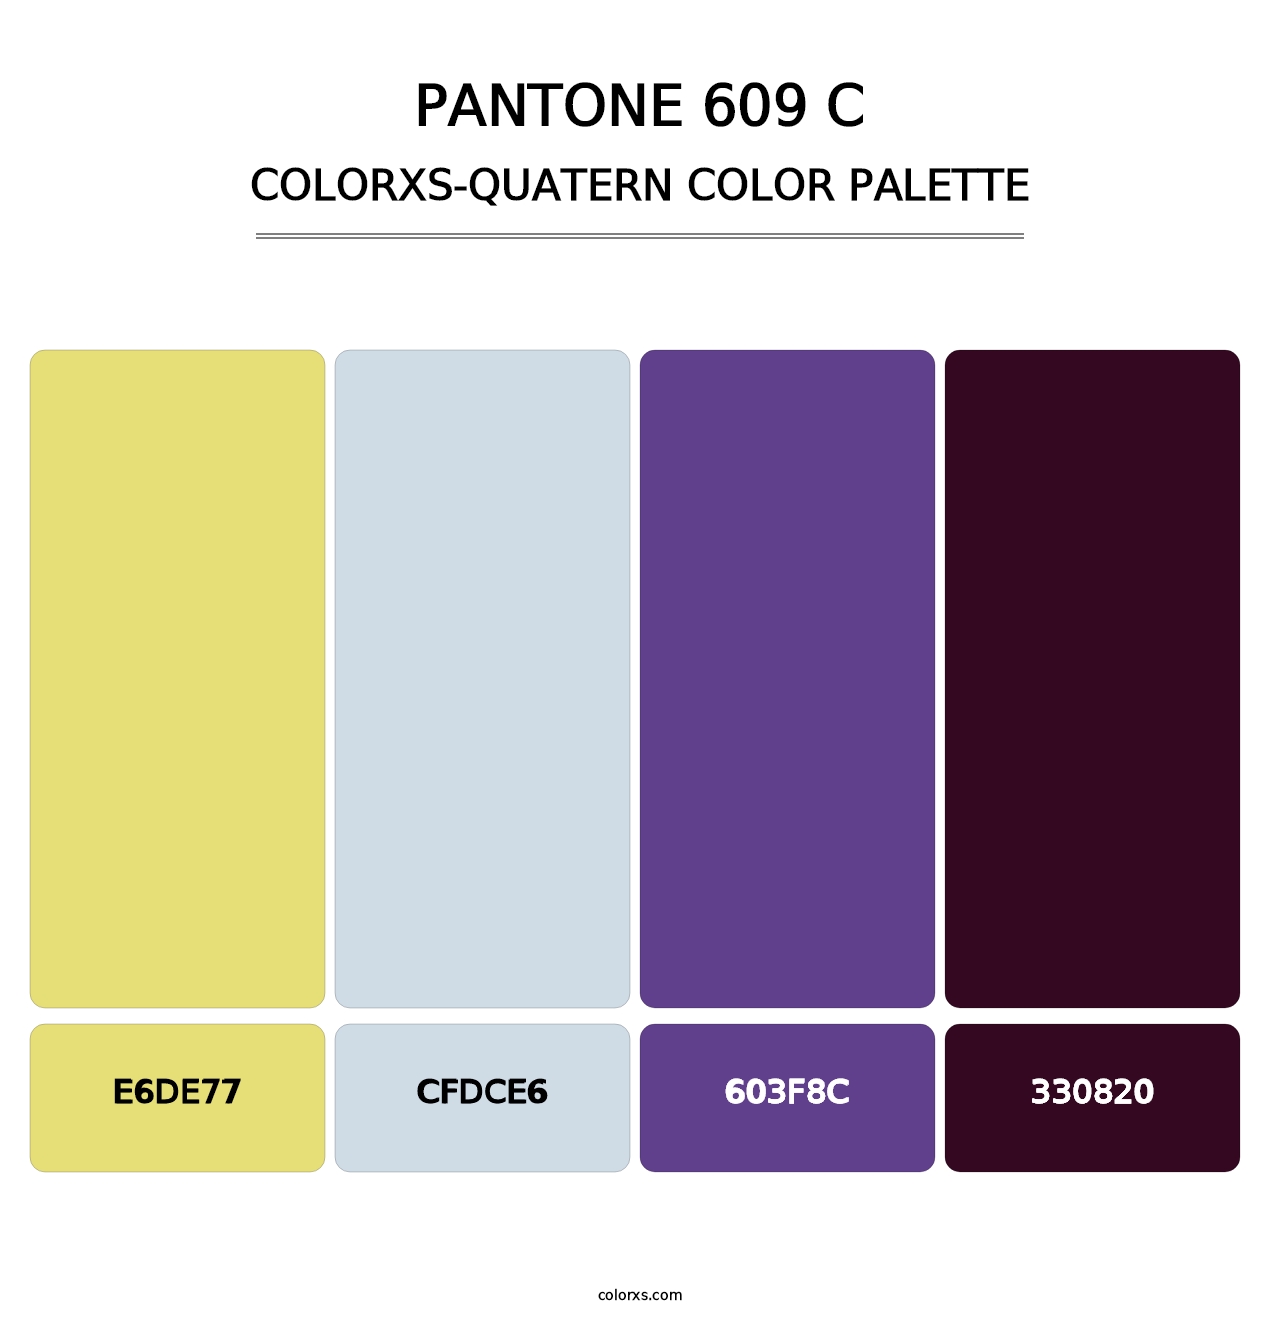 PANTONE 609 C - Colorxs Quatern Palette